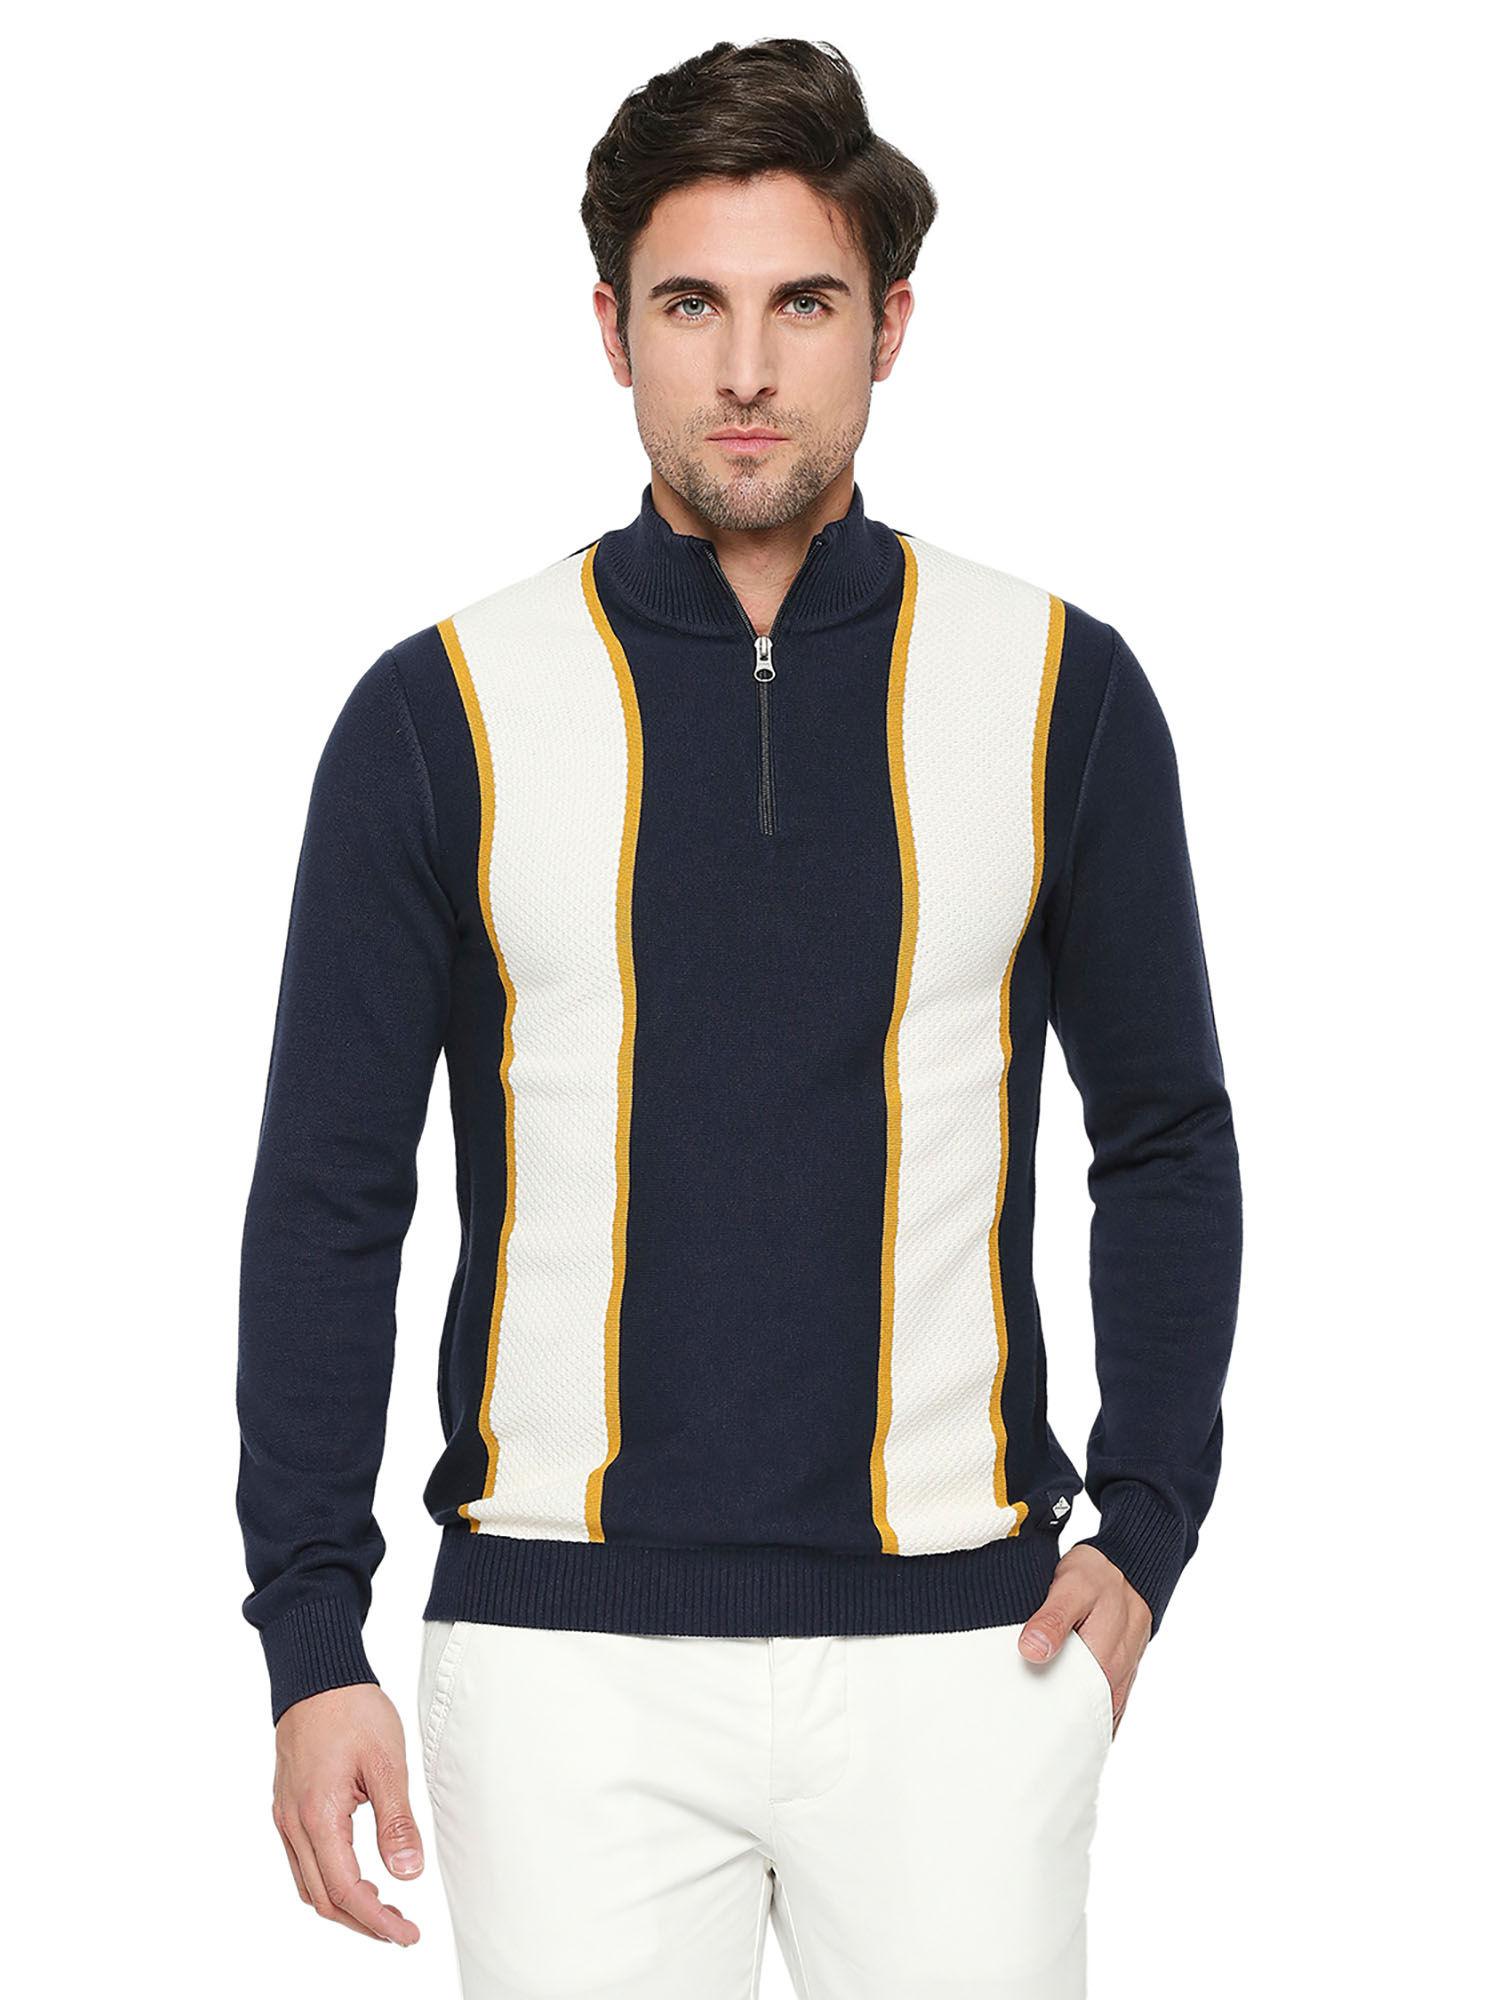 men-full-sleeves-navy-blue-colorblock-sweatshirt